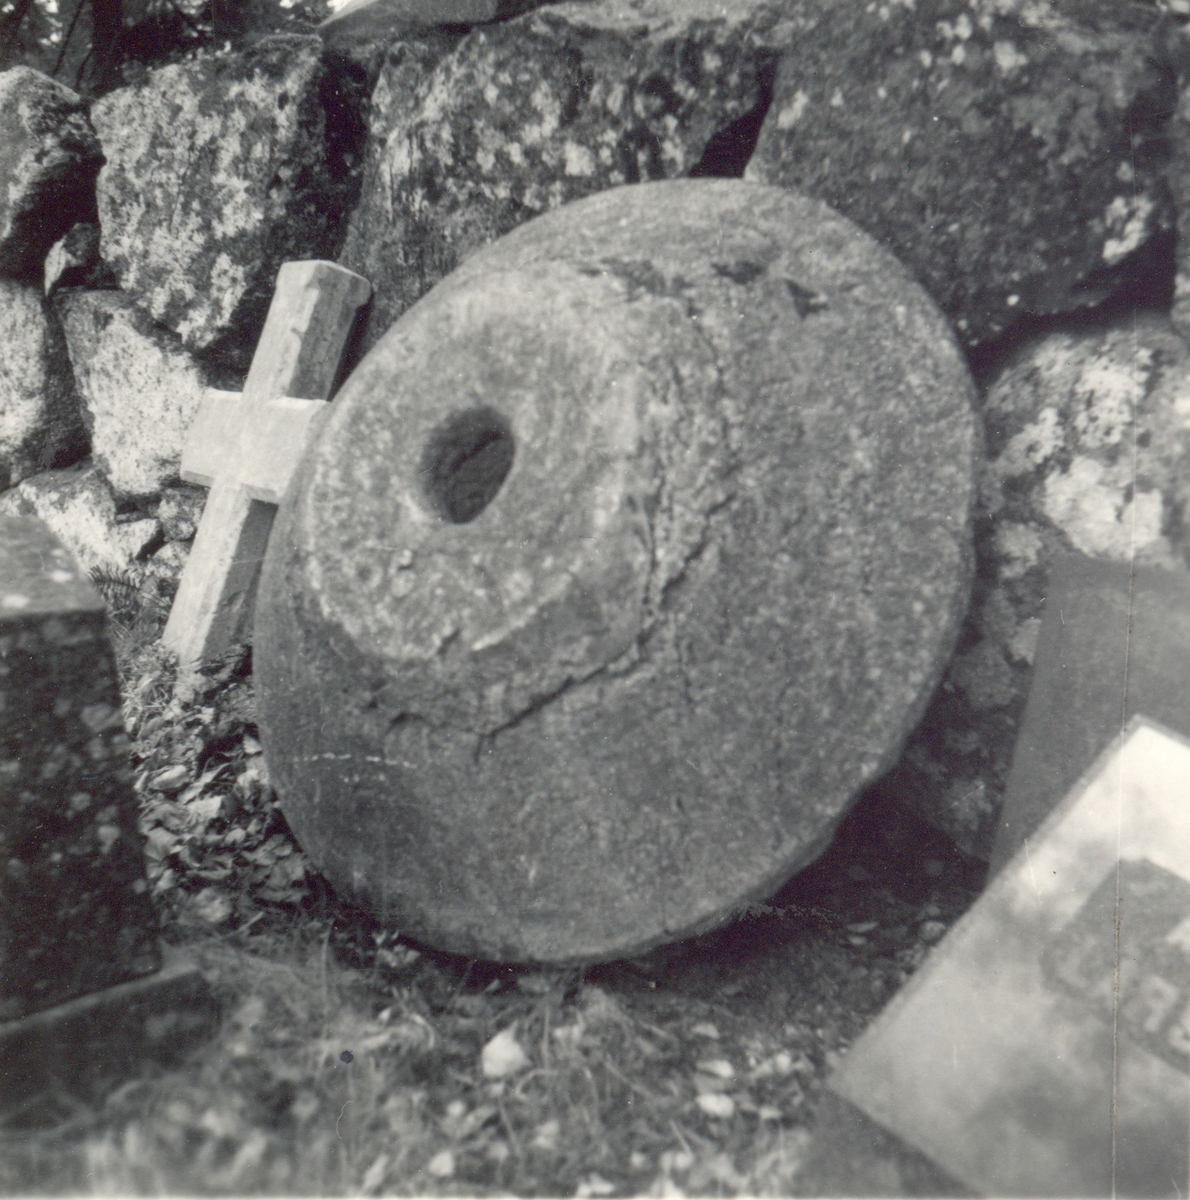 Ett kors och en kuppa i Blackstad socken.

Dopfuntskuppa

Foto M. Hofrén 1947